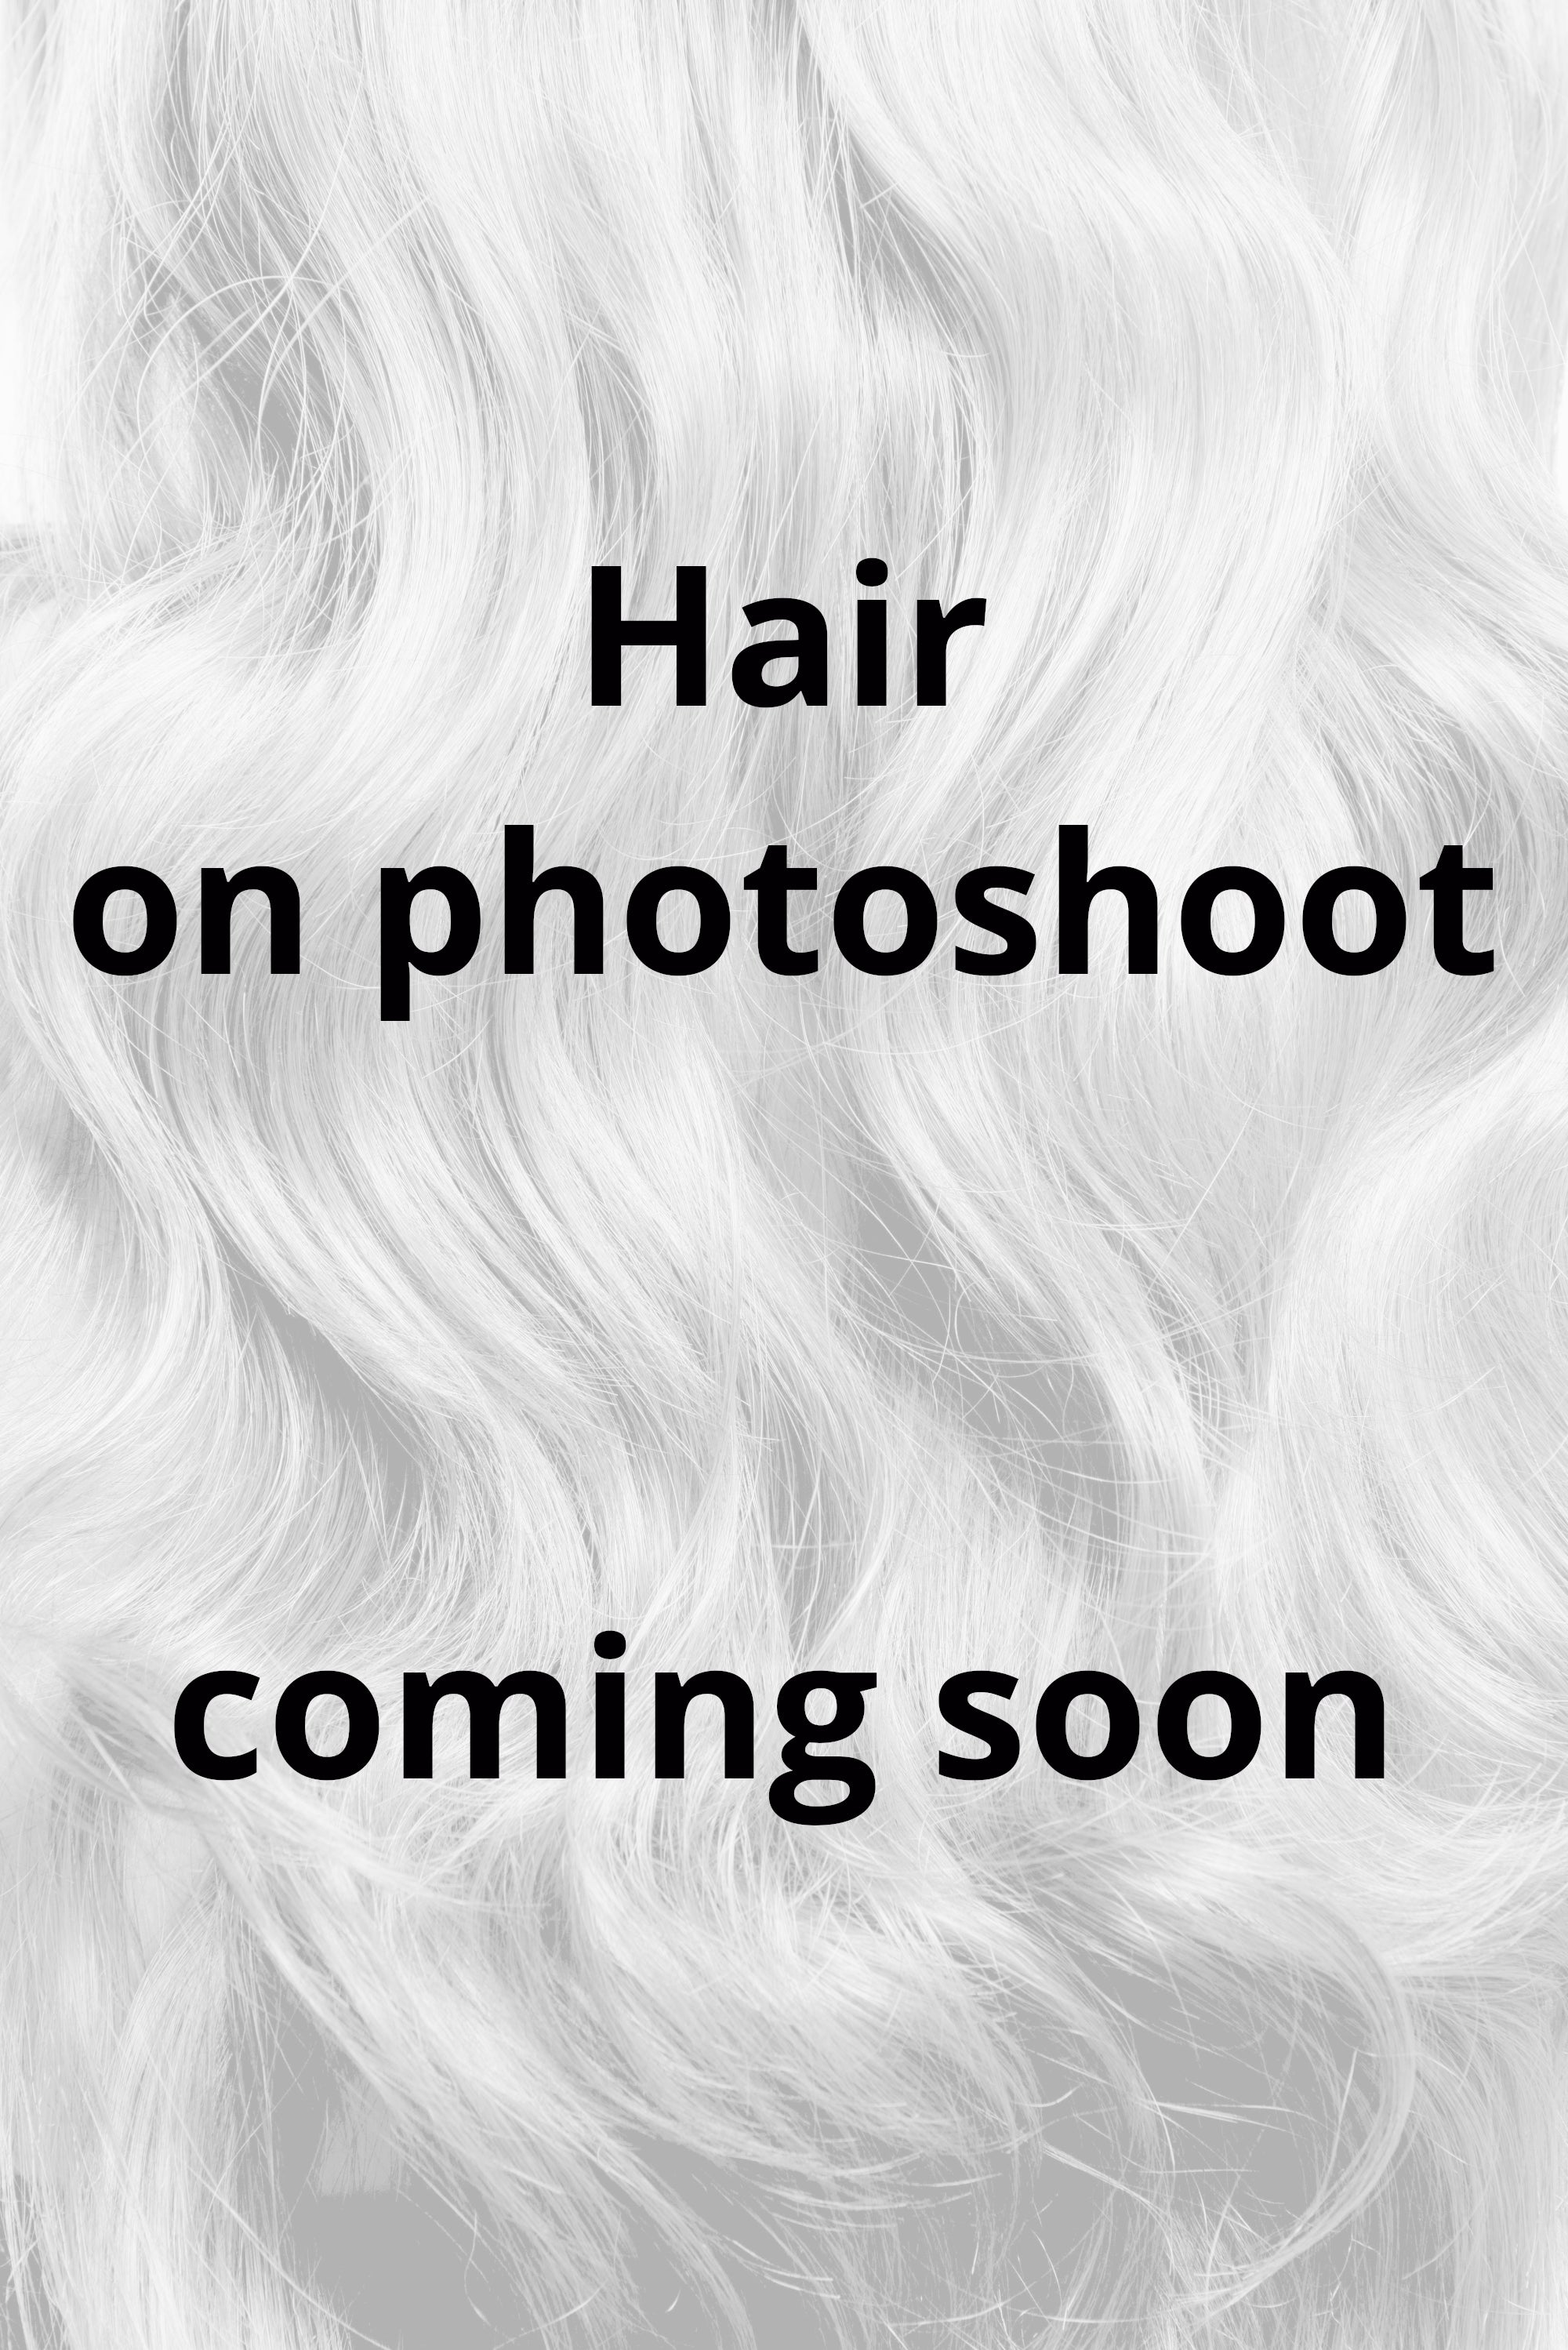 Behair professional Bulk hair "Premium" 22" (55cm) Natural Wave Gold Sand #18 - 25g hair extensions